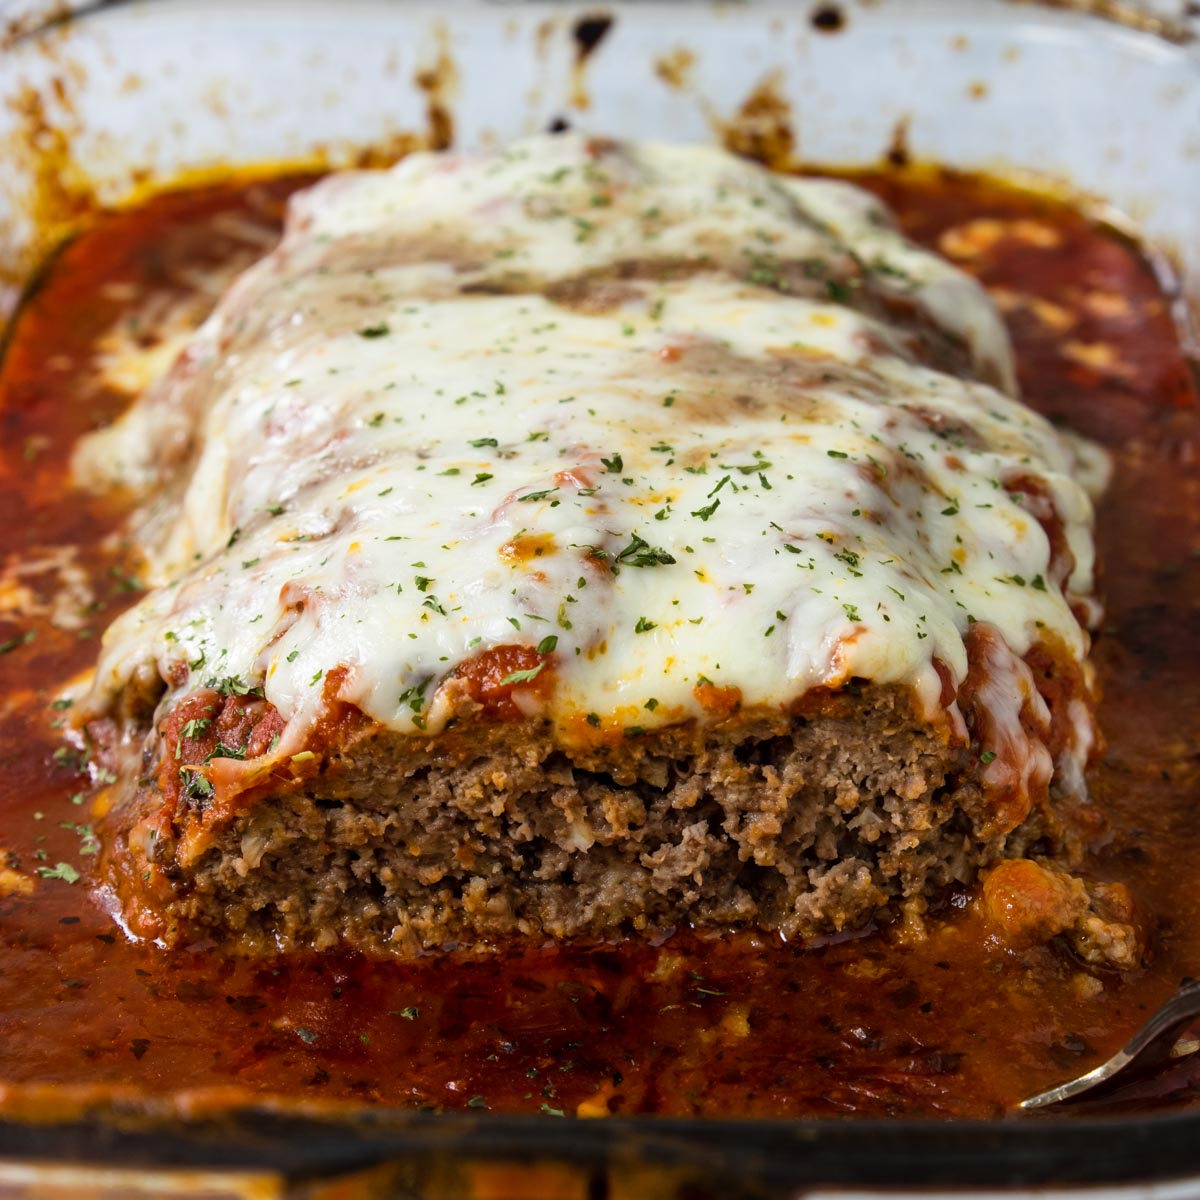 https://momsdinner.net/wp-content/uploads/2020/05/Italian-Meatloaf-Dinner-Recipe.jpg